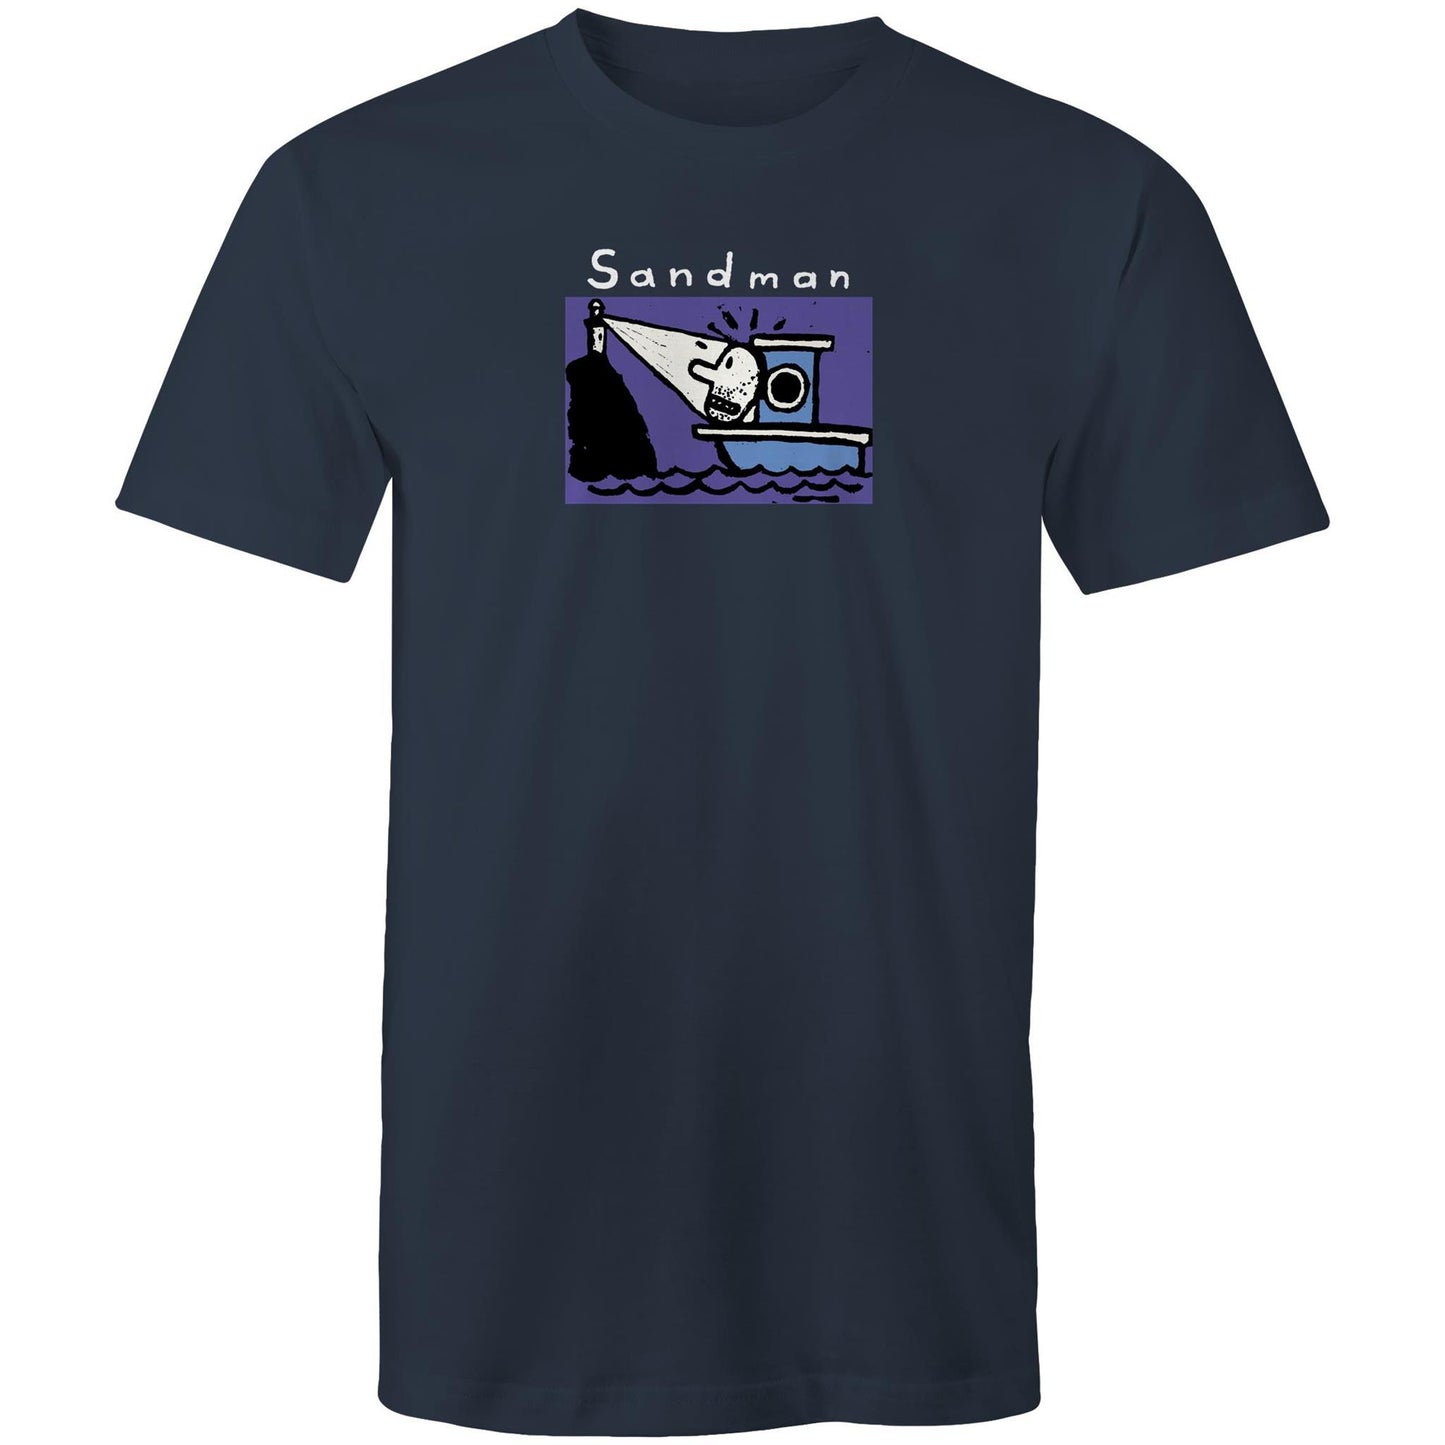 Sandman T Shirts for Men (Unisex)